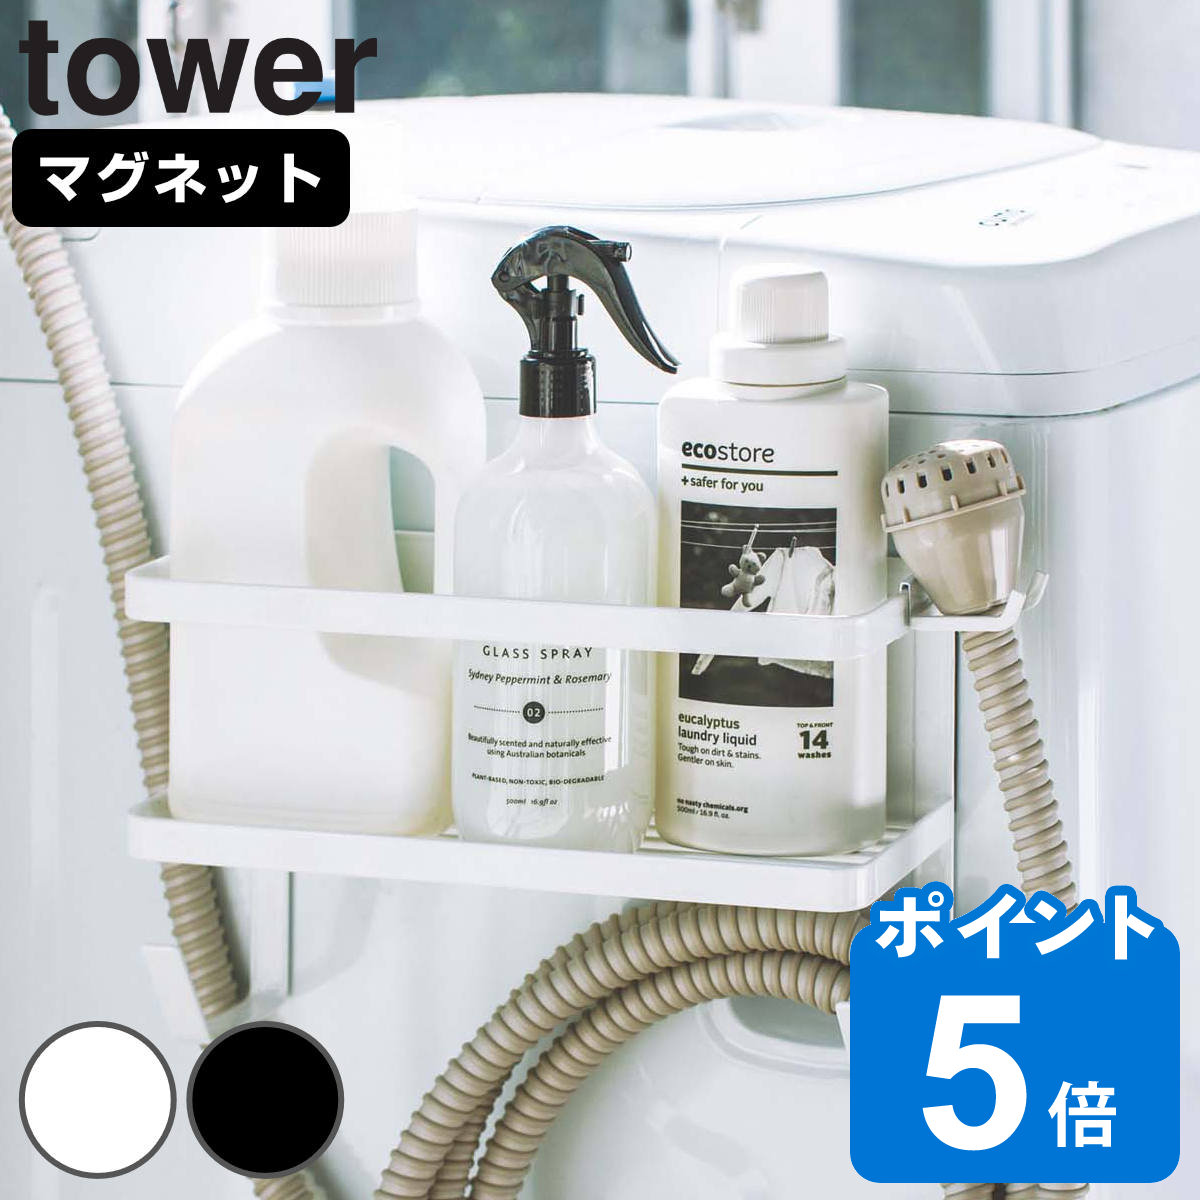 山崎実業 tower ホースホルダー付き洗濯機横マグネットラック タワー